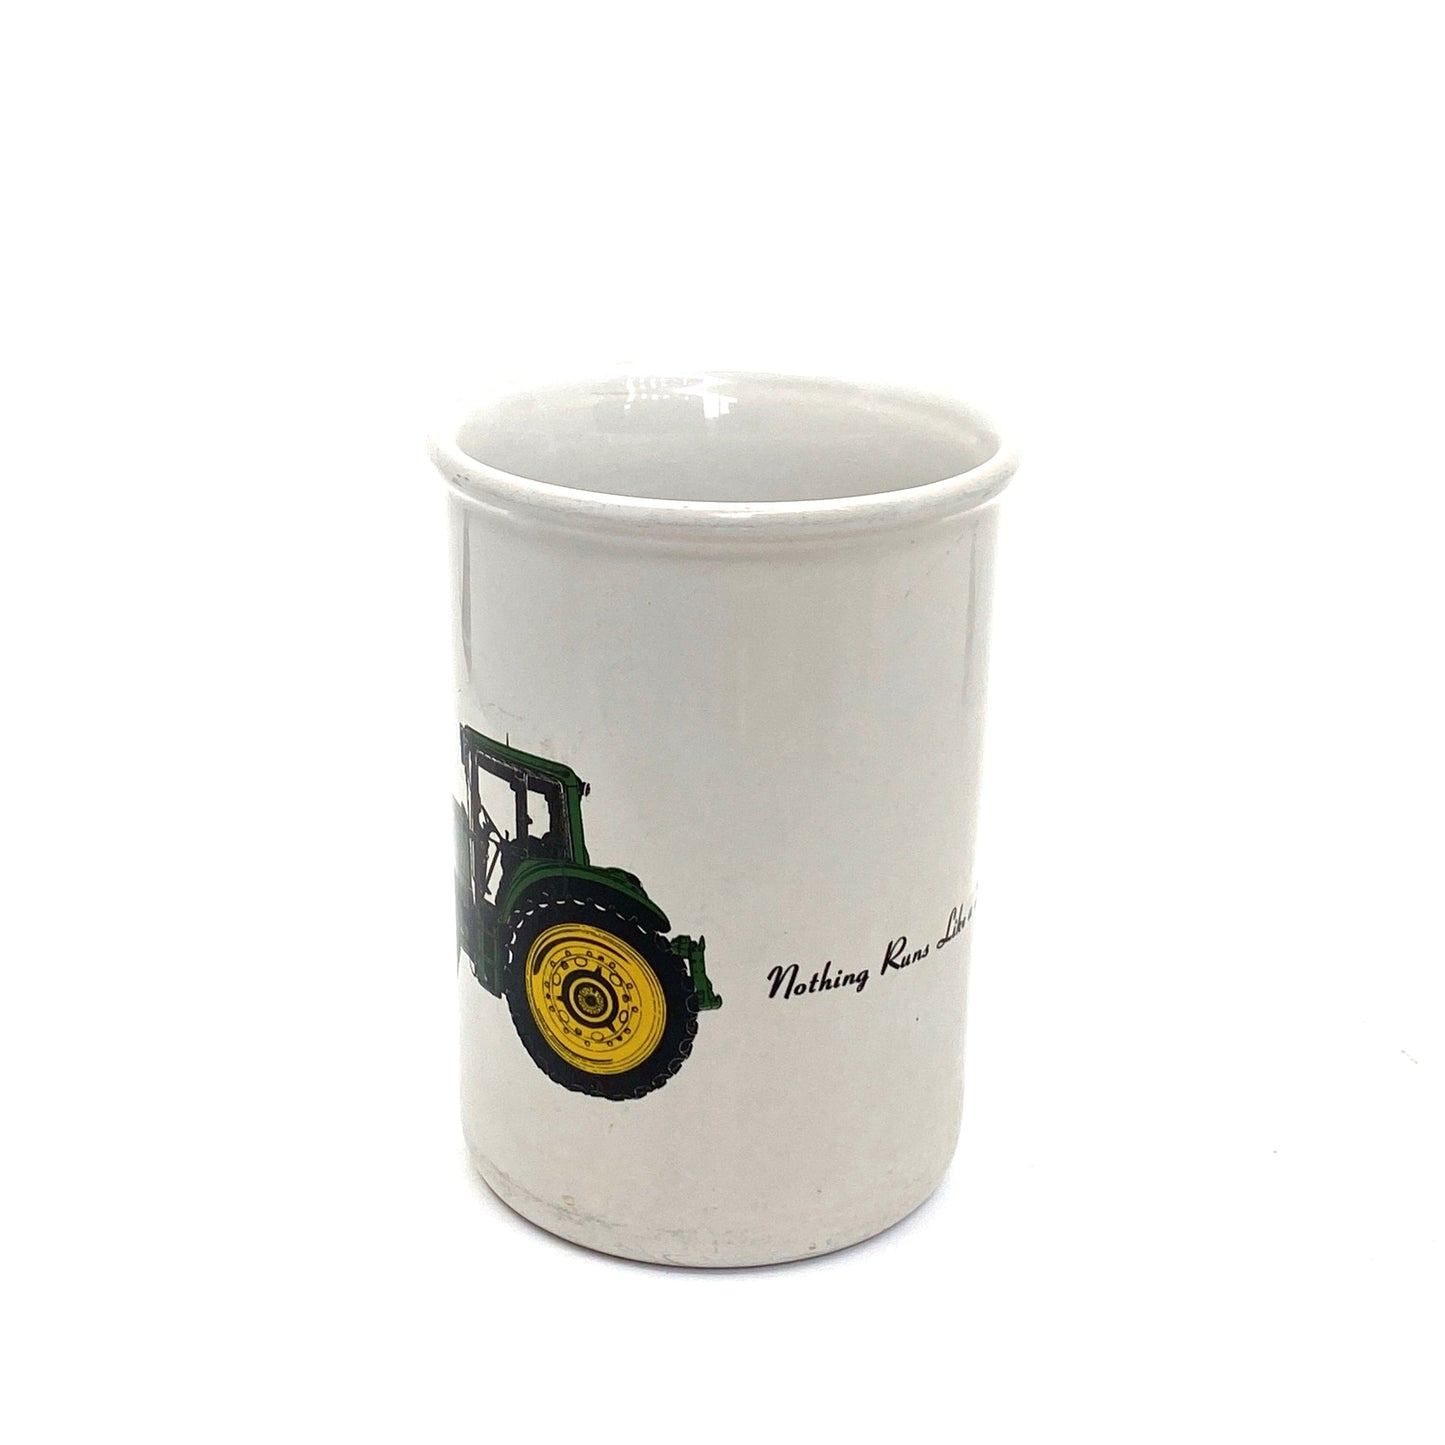 Vintage John Deere Coffee Cup Mug “Nothing runs Like A Deere!” 16 Oz